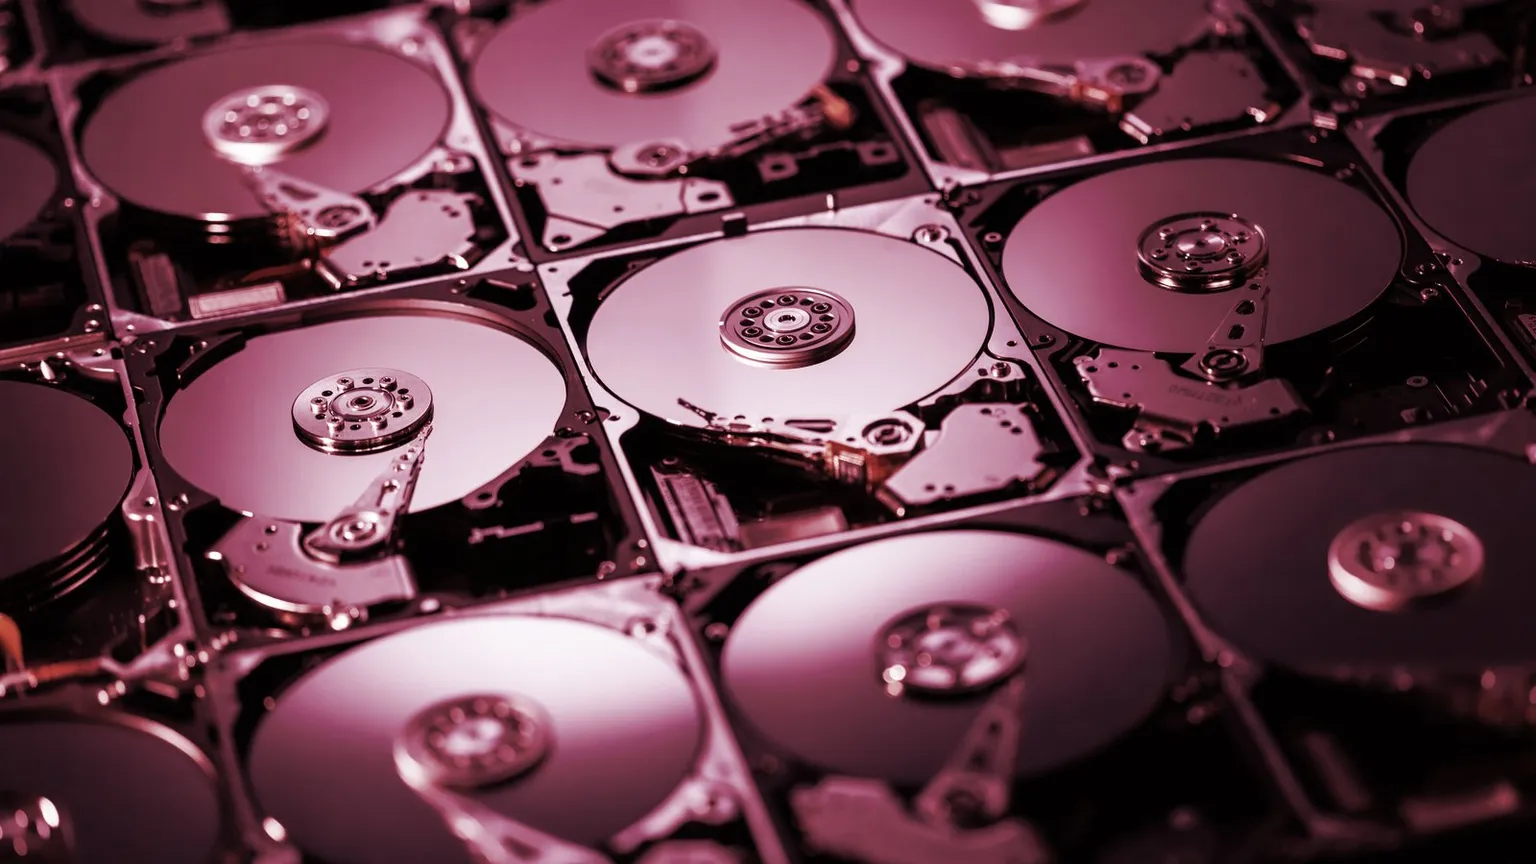 Los discos duros se utilizan para "cultivar" la criptomoneda Chia. Imagen: Shutterstock